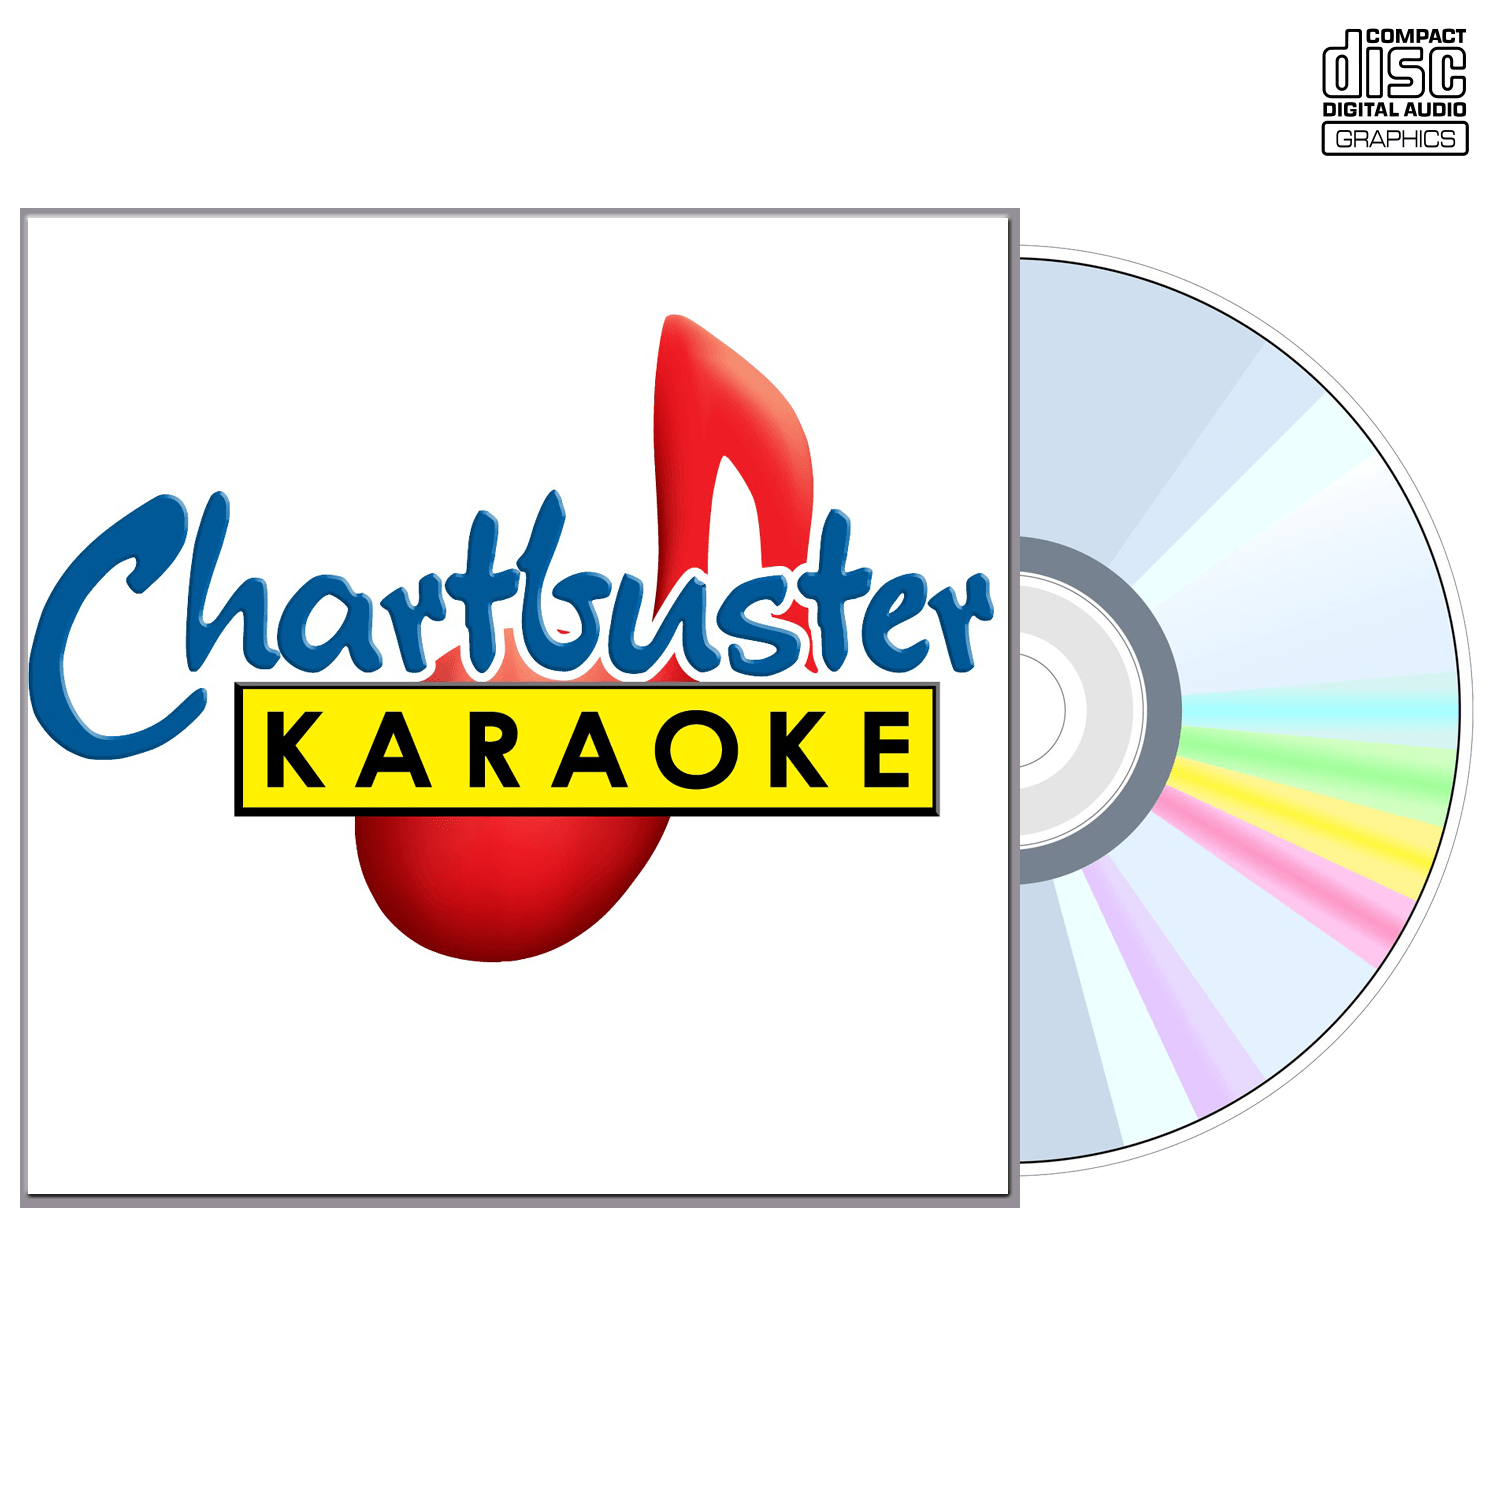 Rick Astley - CD+G - Chartbuster Karaoke - Karaoke Home Entertainment